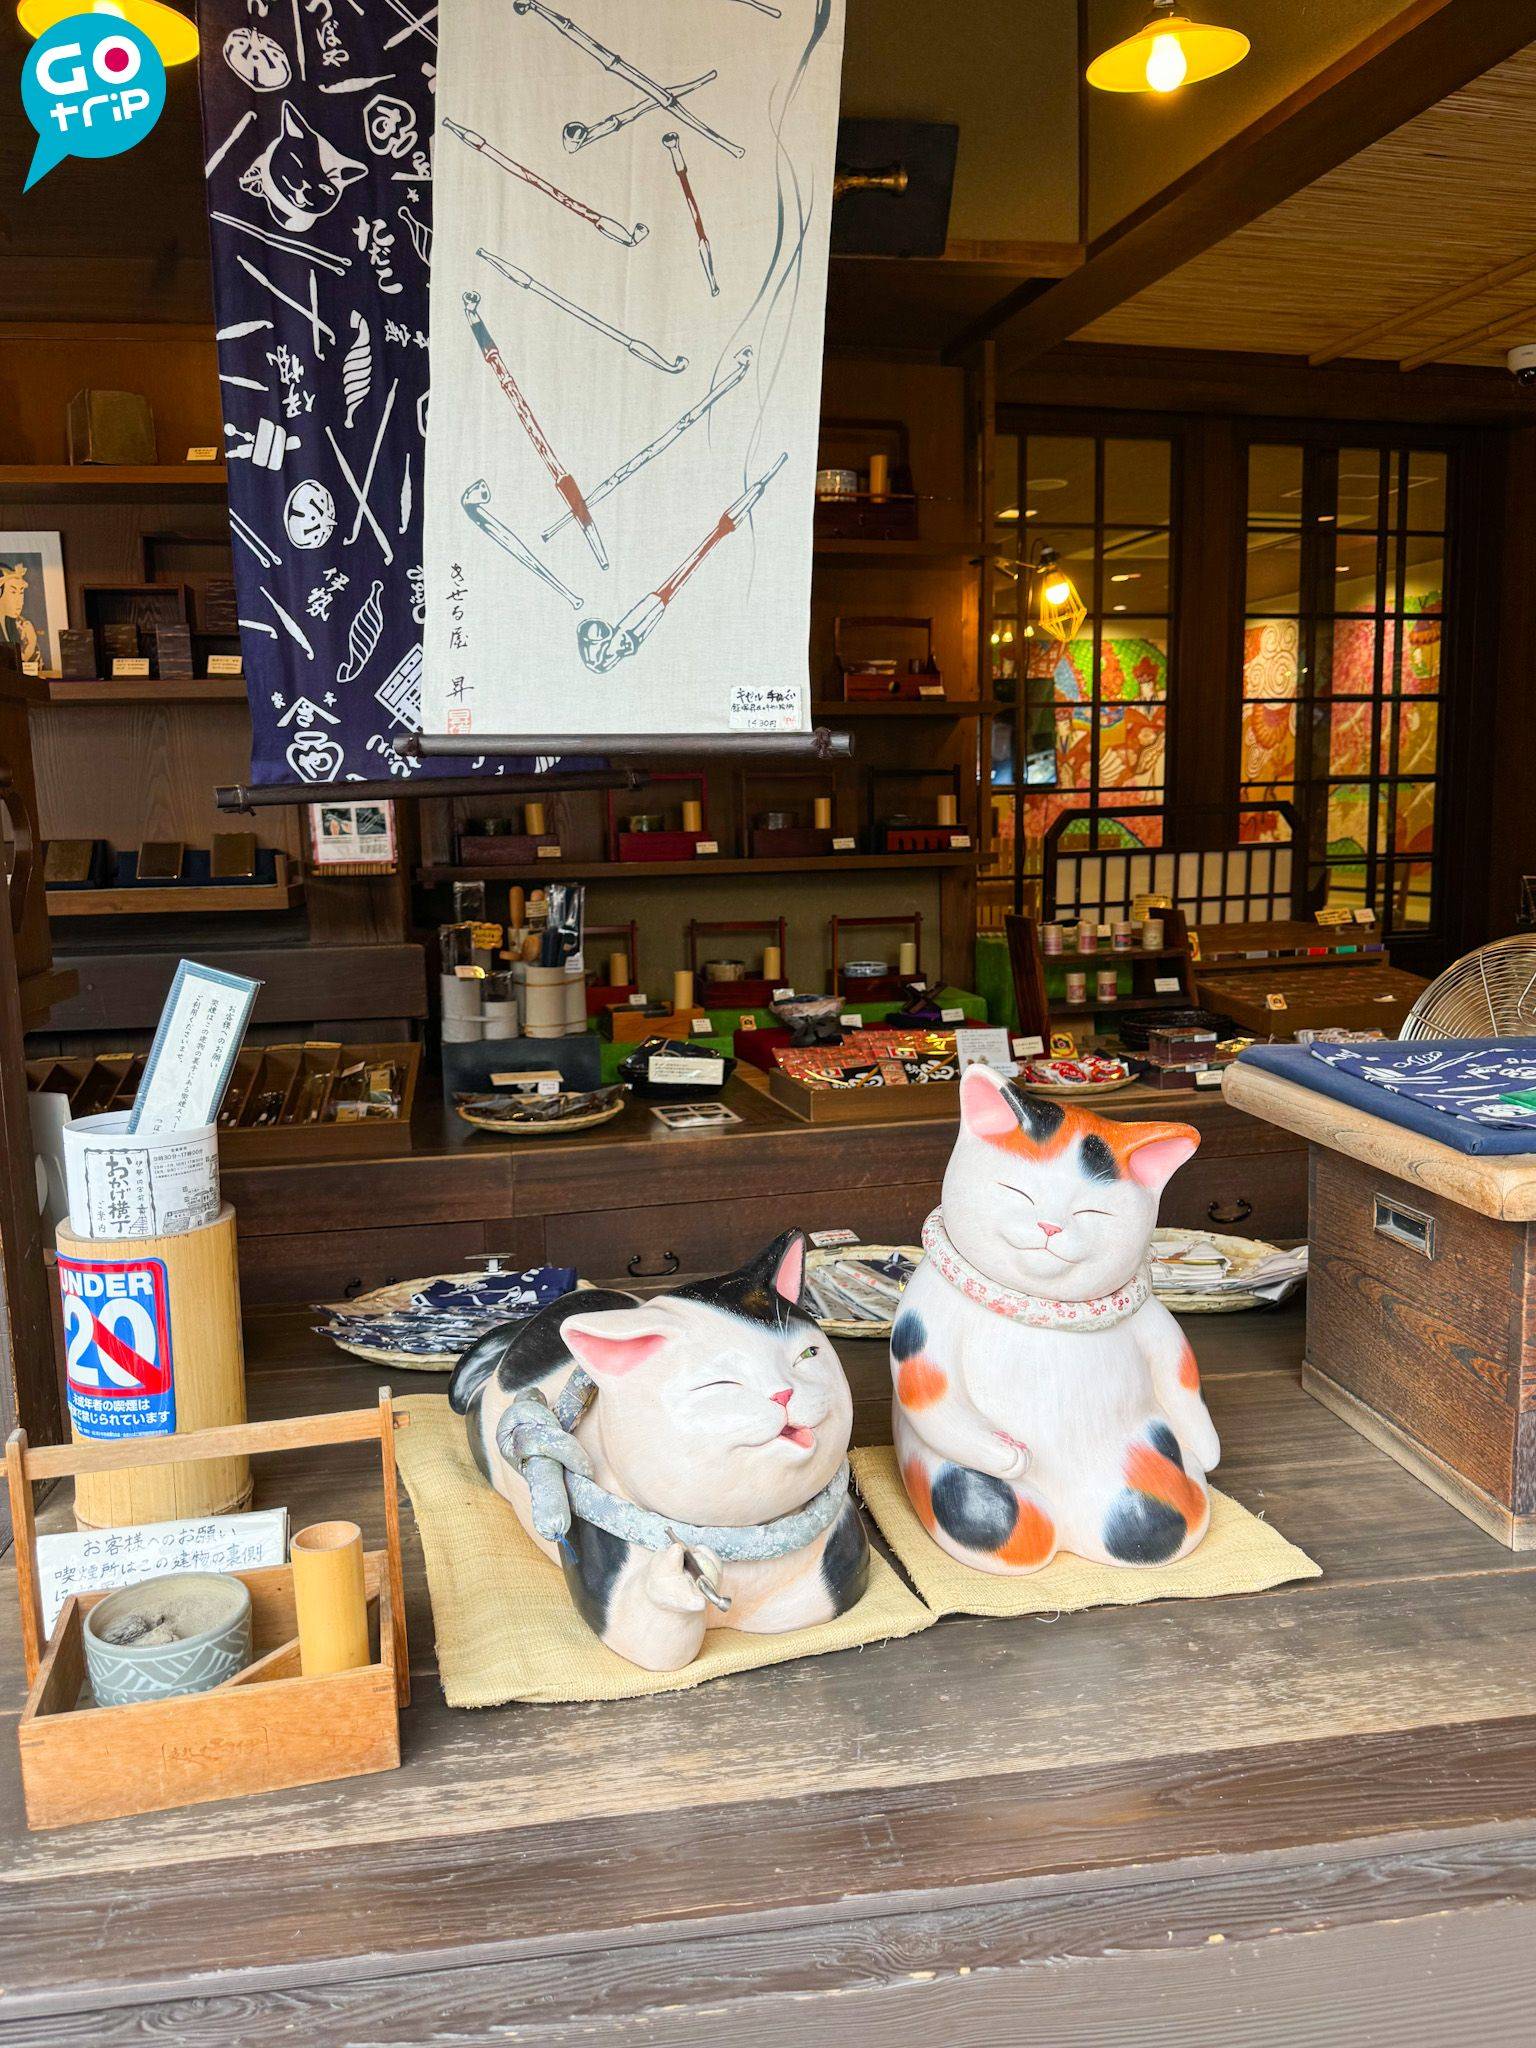 名古屋自由行 托福橫丁的吉祥物為招財貓。